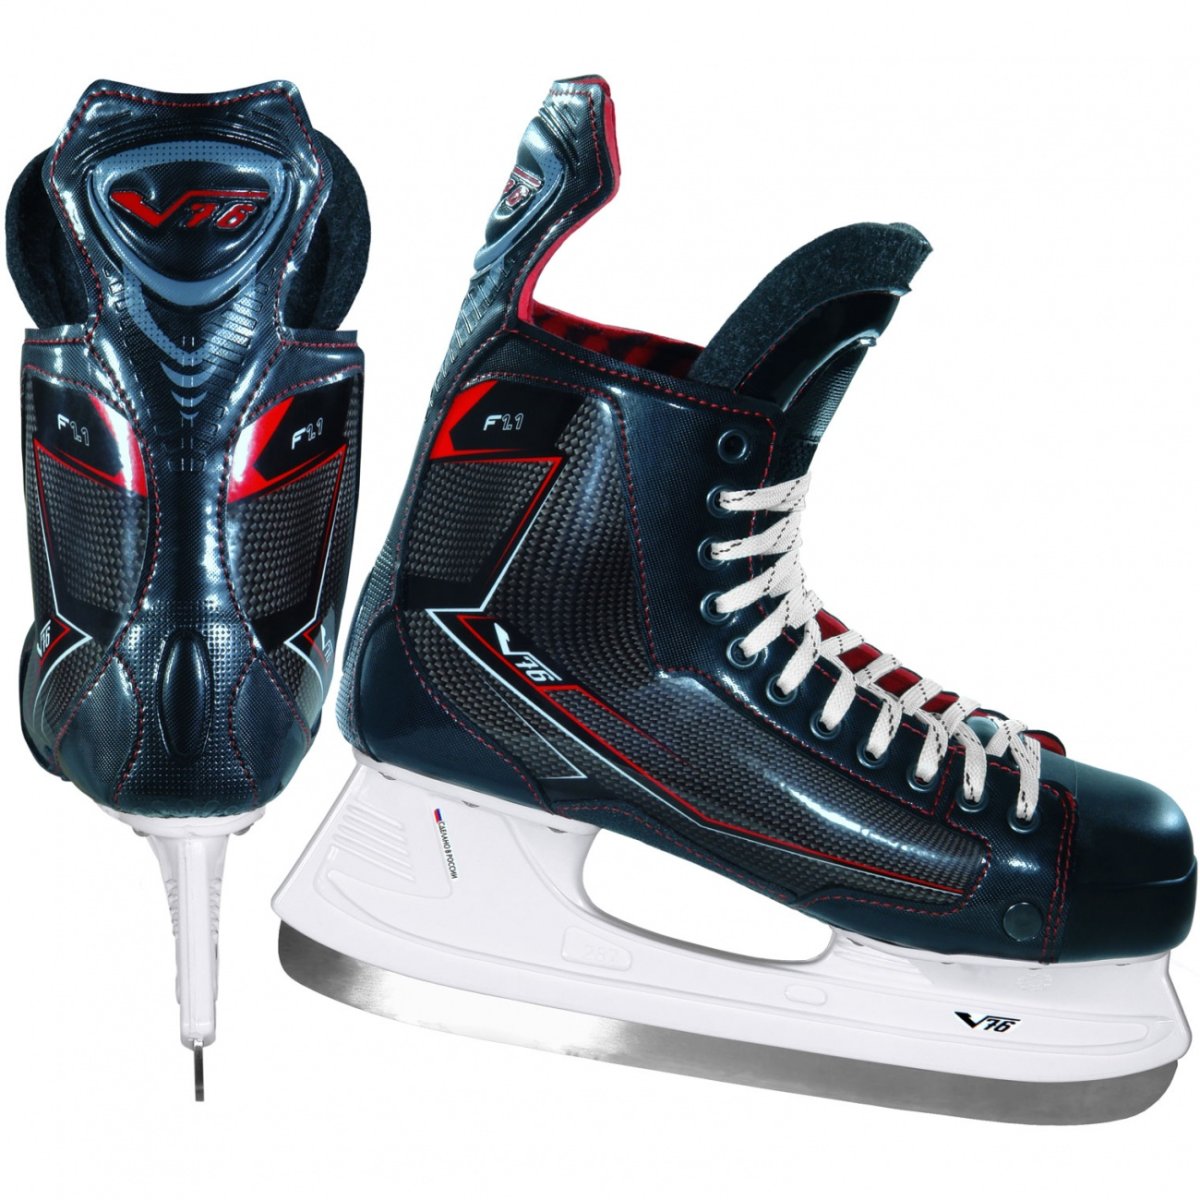 Хоккейные коньки v76 Lux-s